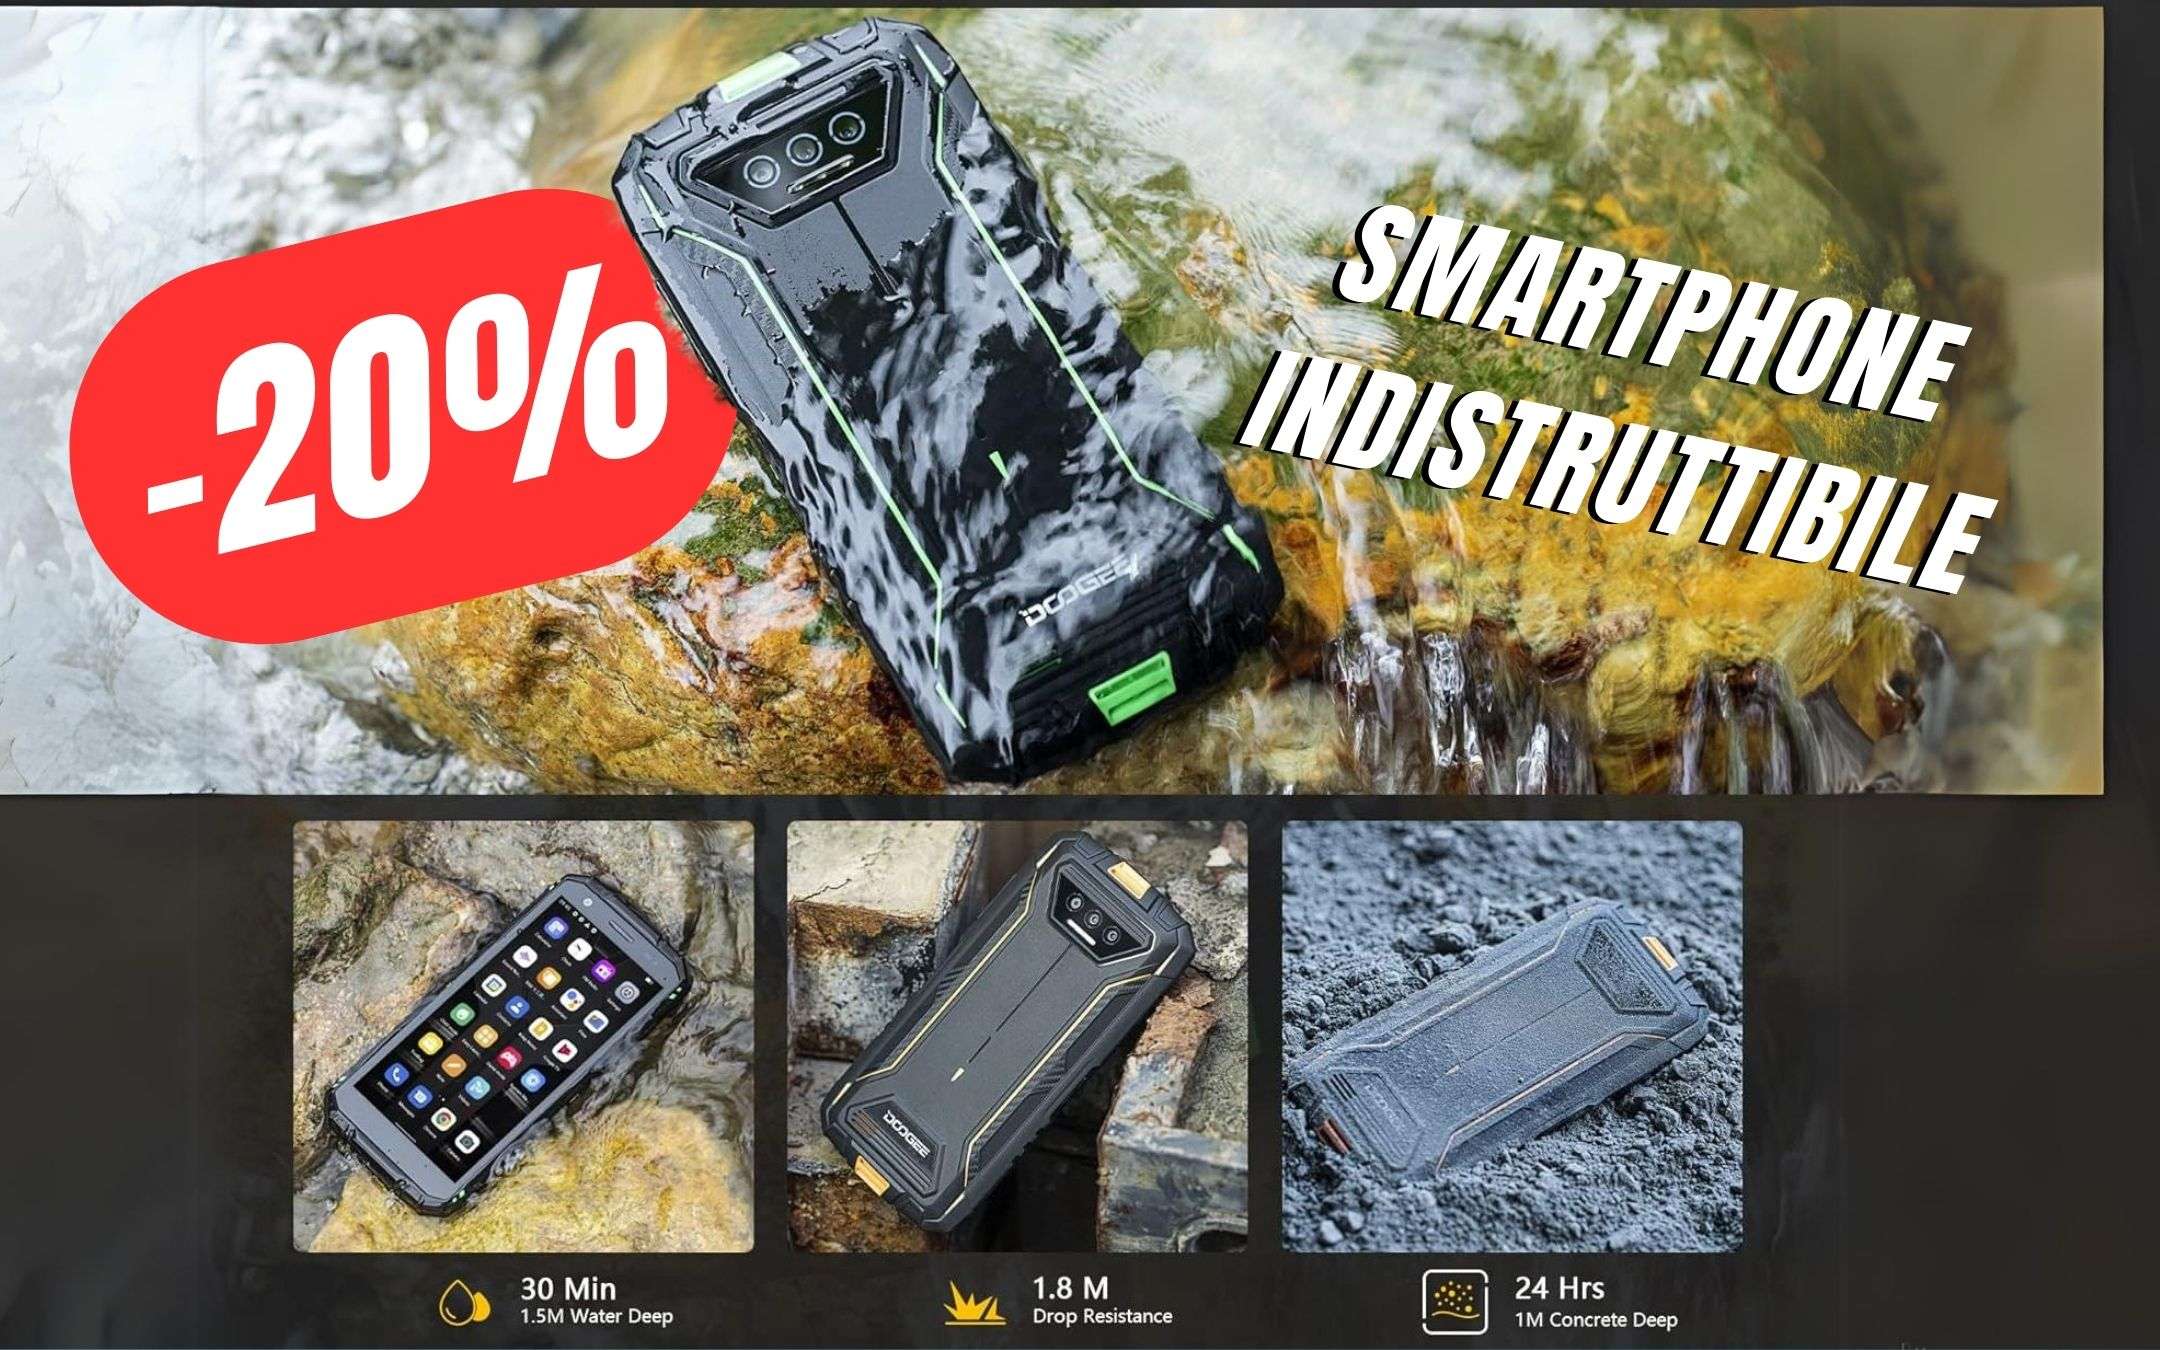 Lo Smartphone Indistruttibile CROLLA del -20% grazie a questo SCONTO!